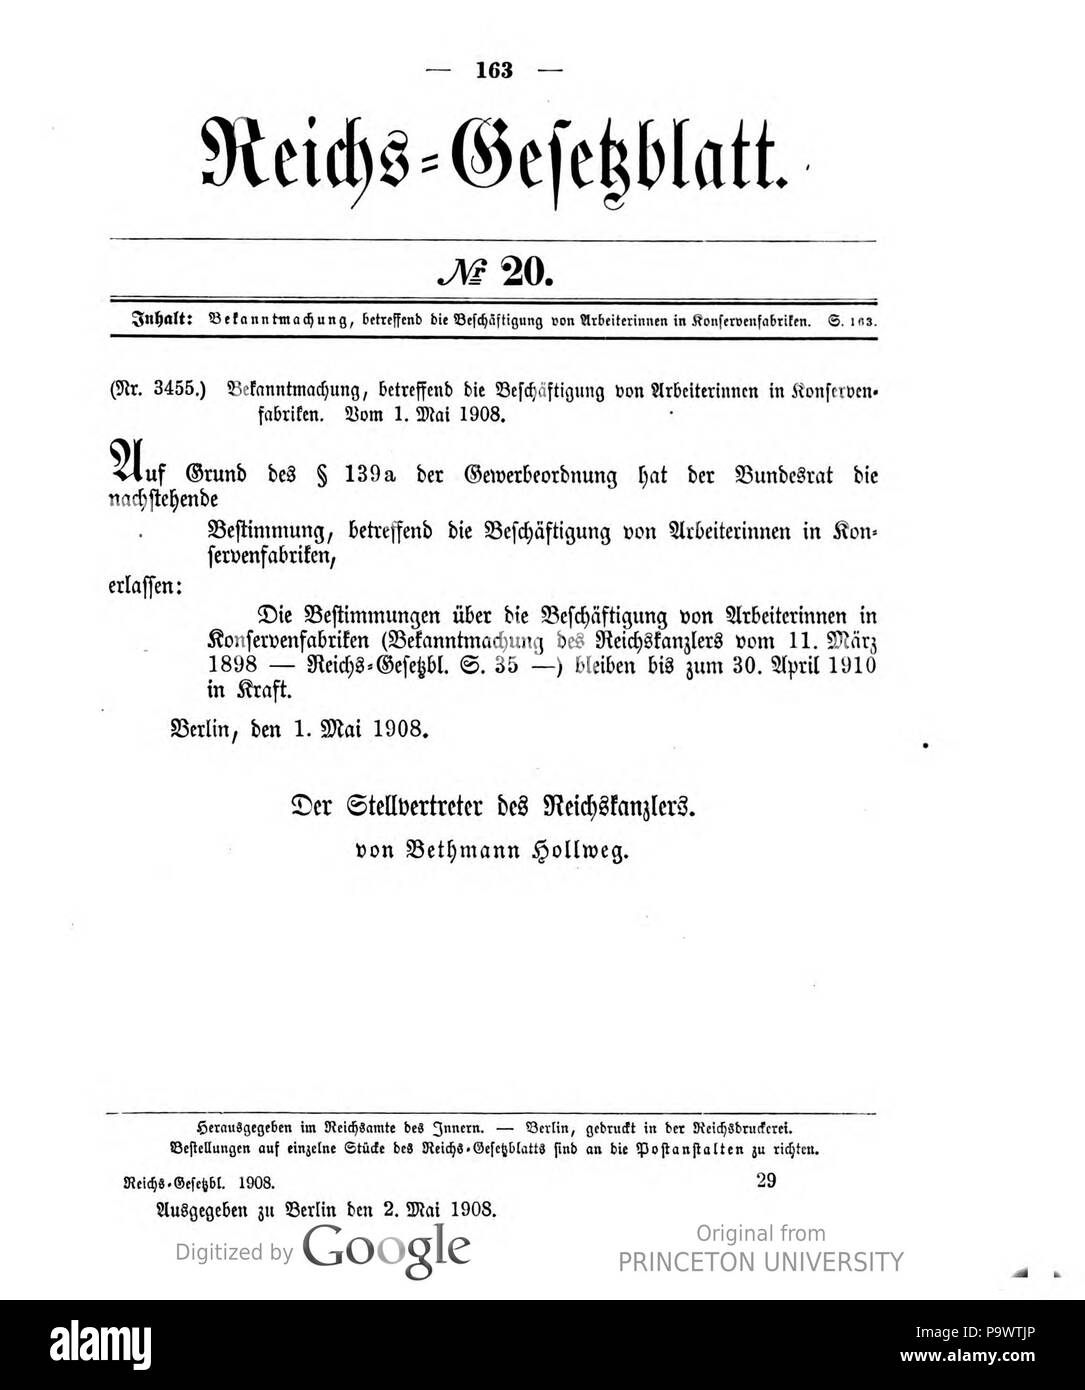 427 Deutsches Reichsgesetzblatt 1908 020 163 Stock Photo